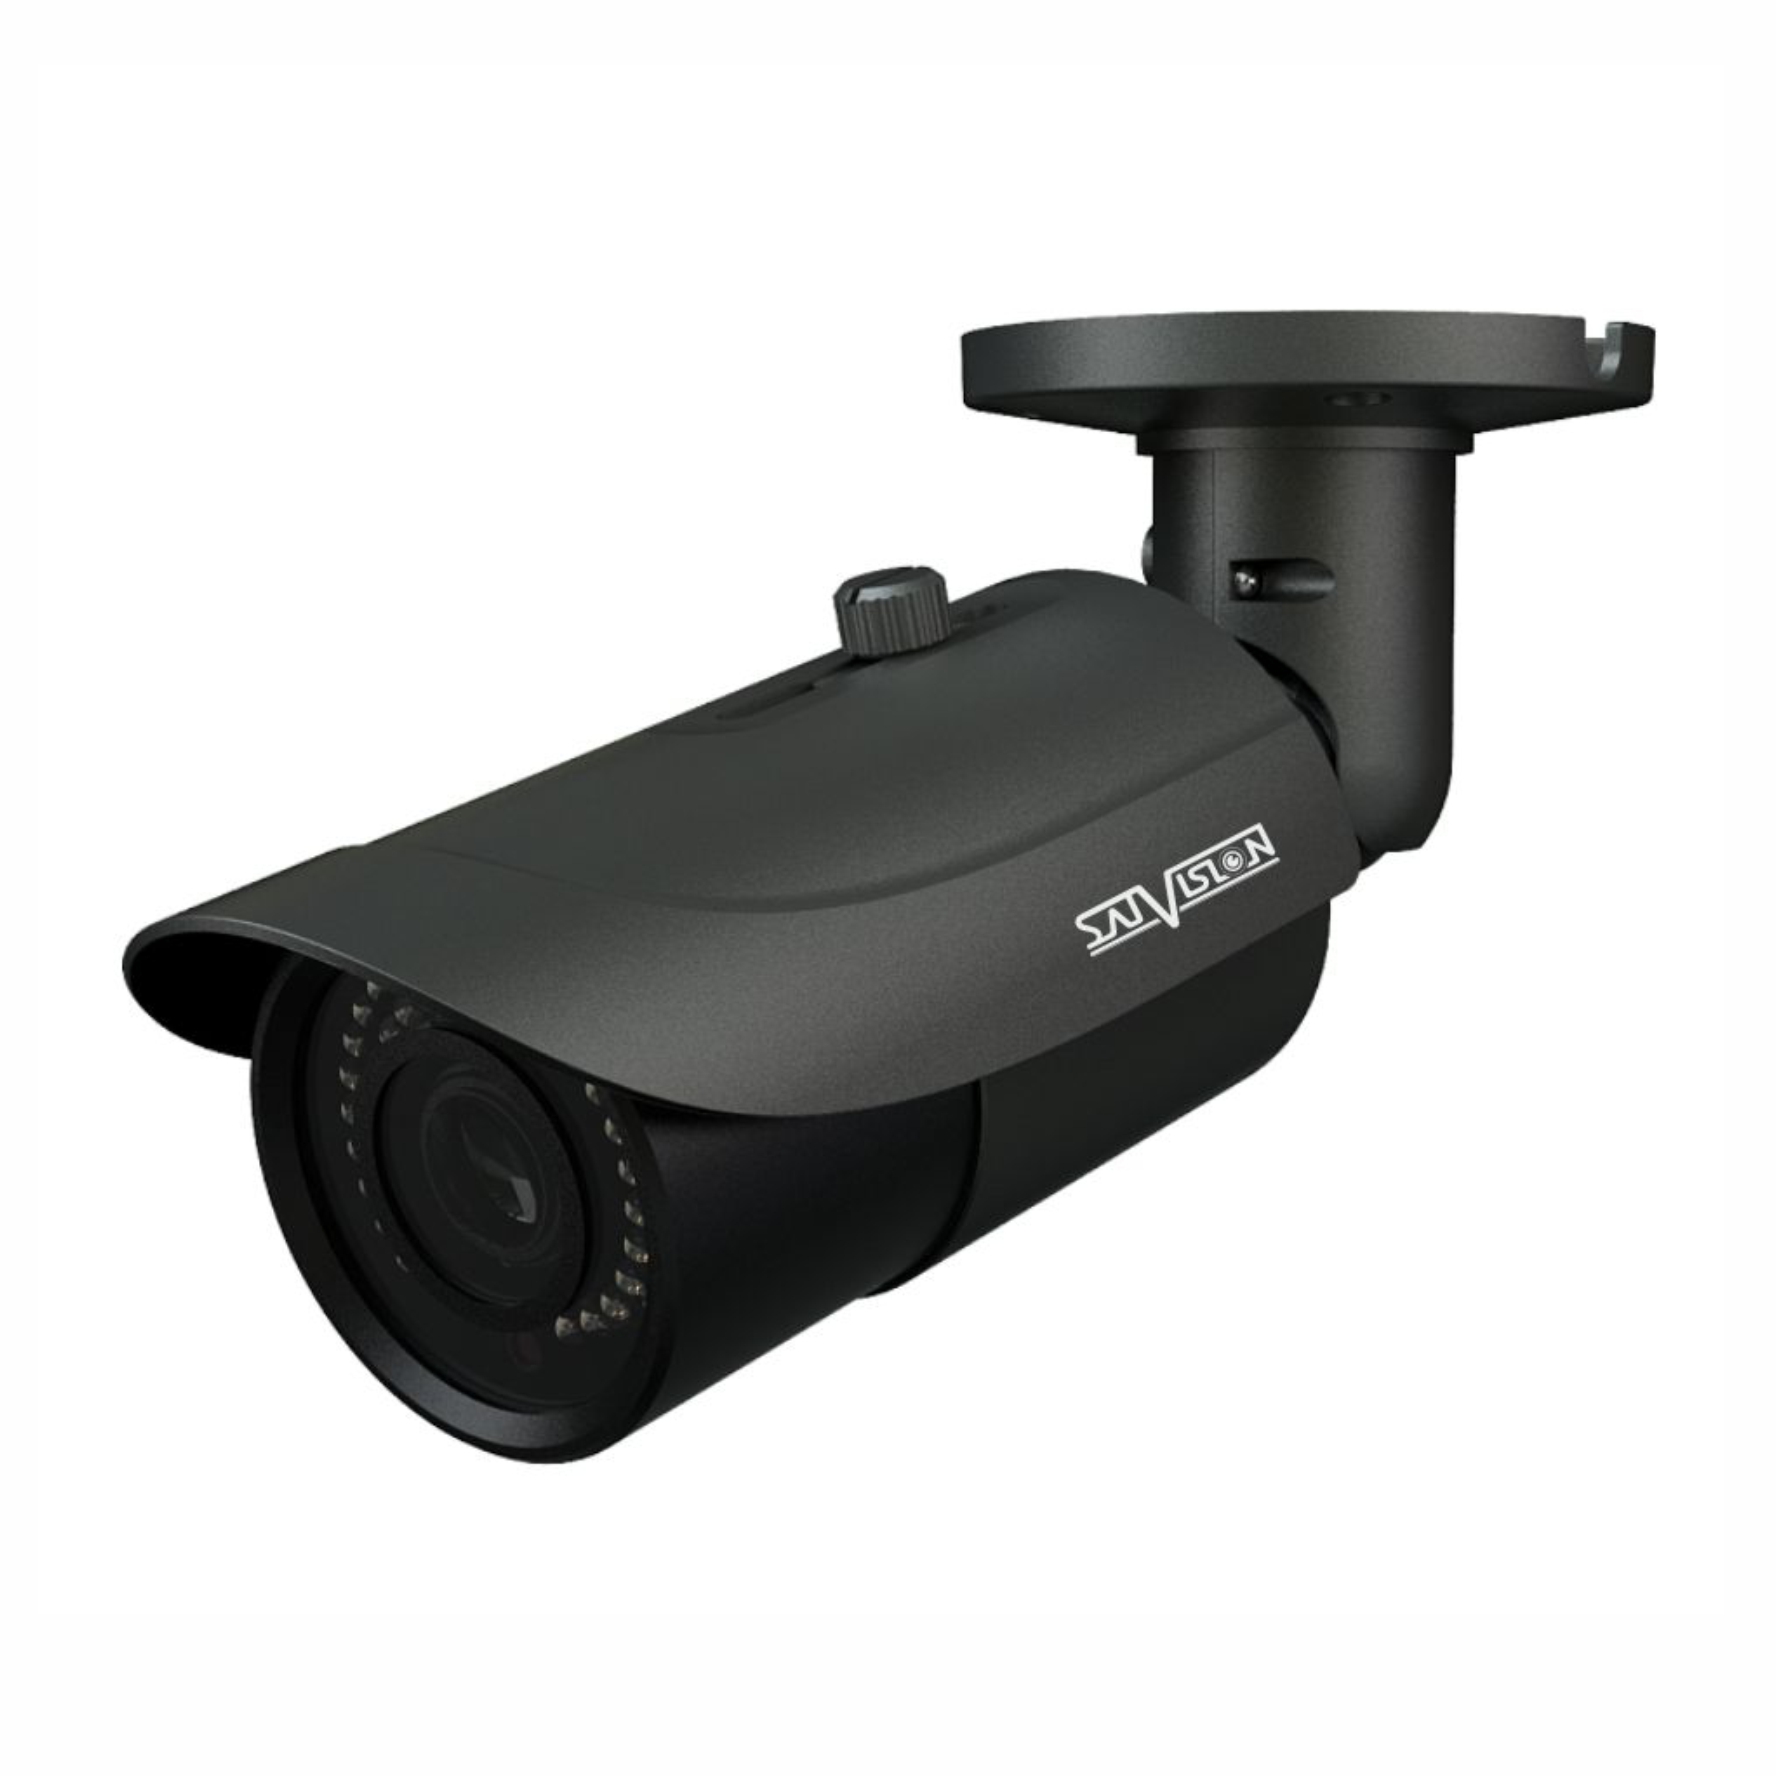 Стационарная видеокамера. IP видеокамера svi-s322v-SD-prov2. Svi-s323v SD SL 2mpix 2.8-12mm видеокамера IP. SVC-s172 2 Mpix 2.8mm UTC/Dip видеокамера AHD. Камера Satvision уличная 5мп.